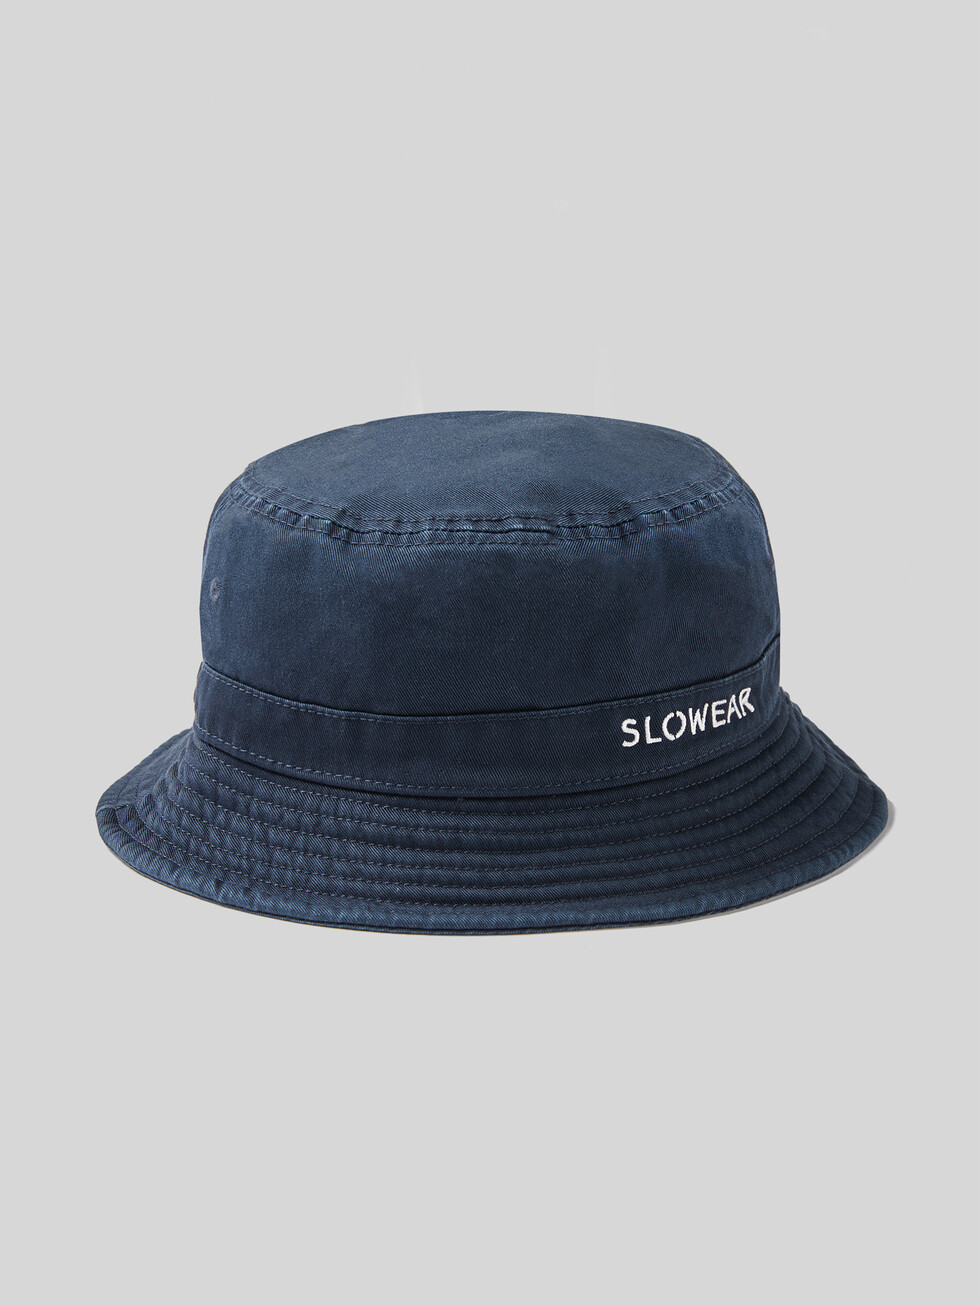 Cappello bucket in cotone , Slowear | Slowear